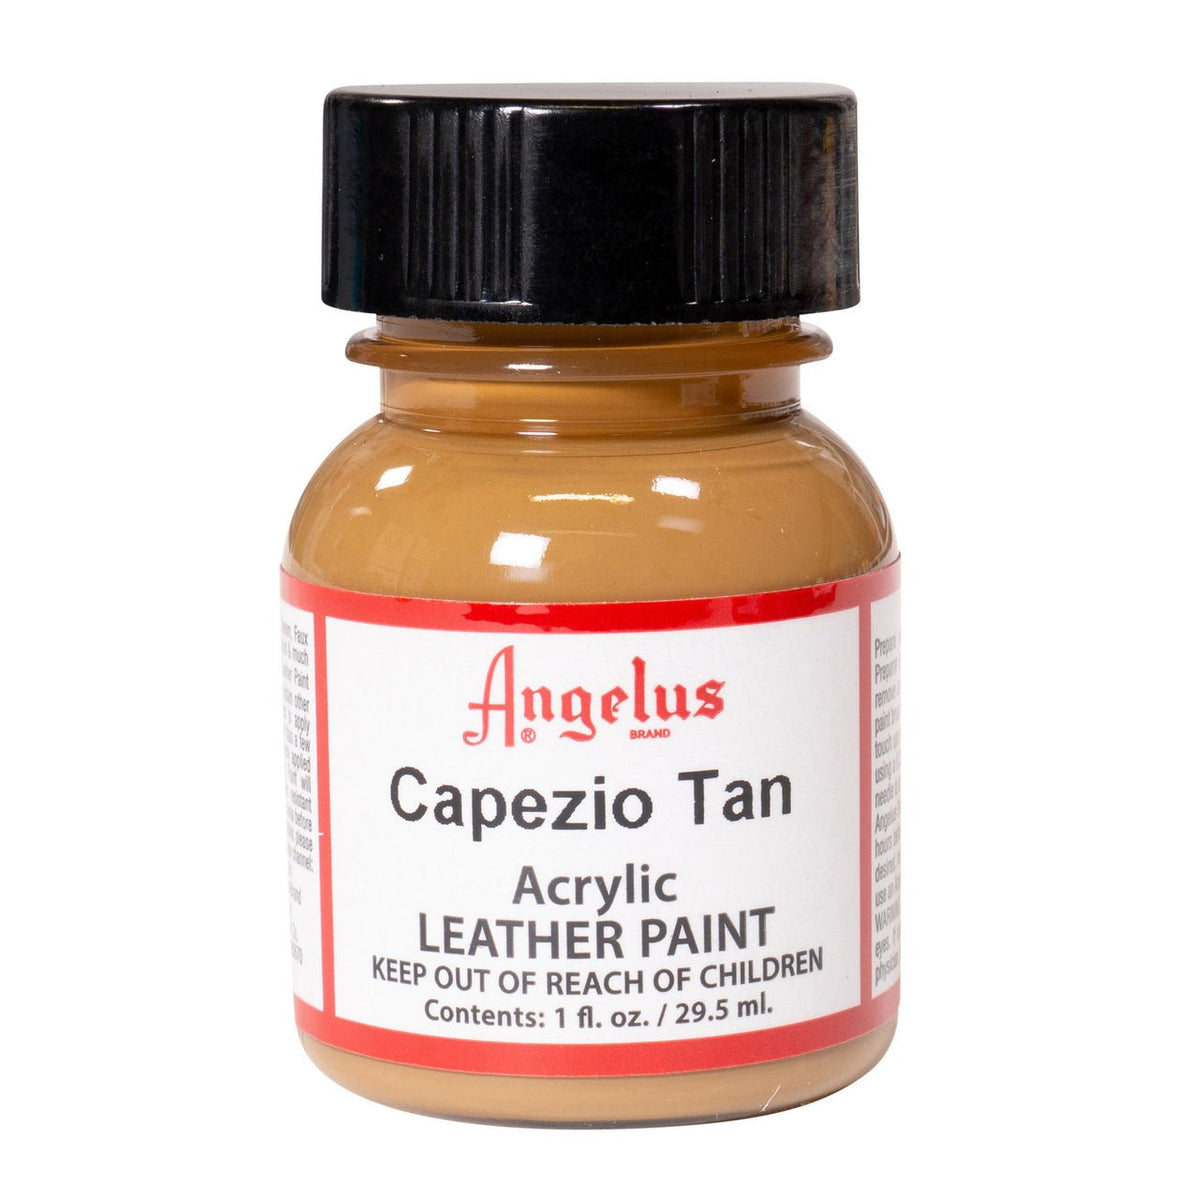 Angelus Acrylic Leather Paint - 1 oz. Bottle - Capezio Tan - merriartist.com